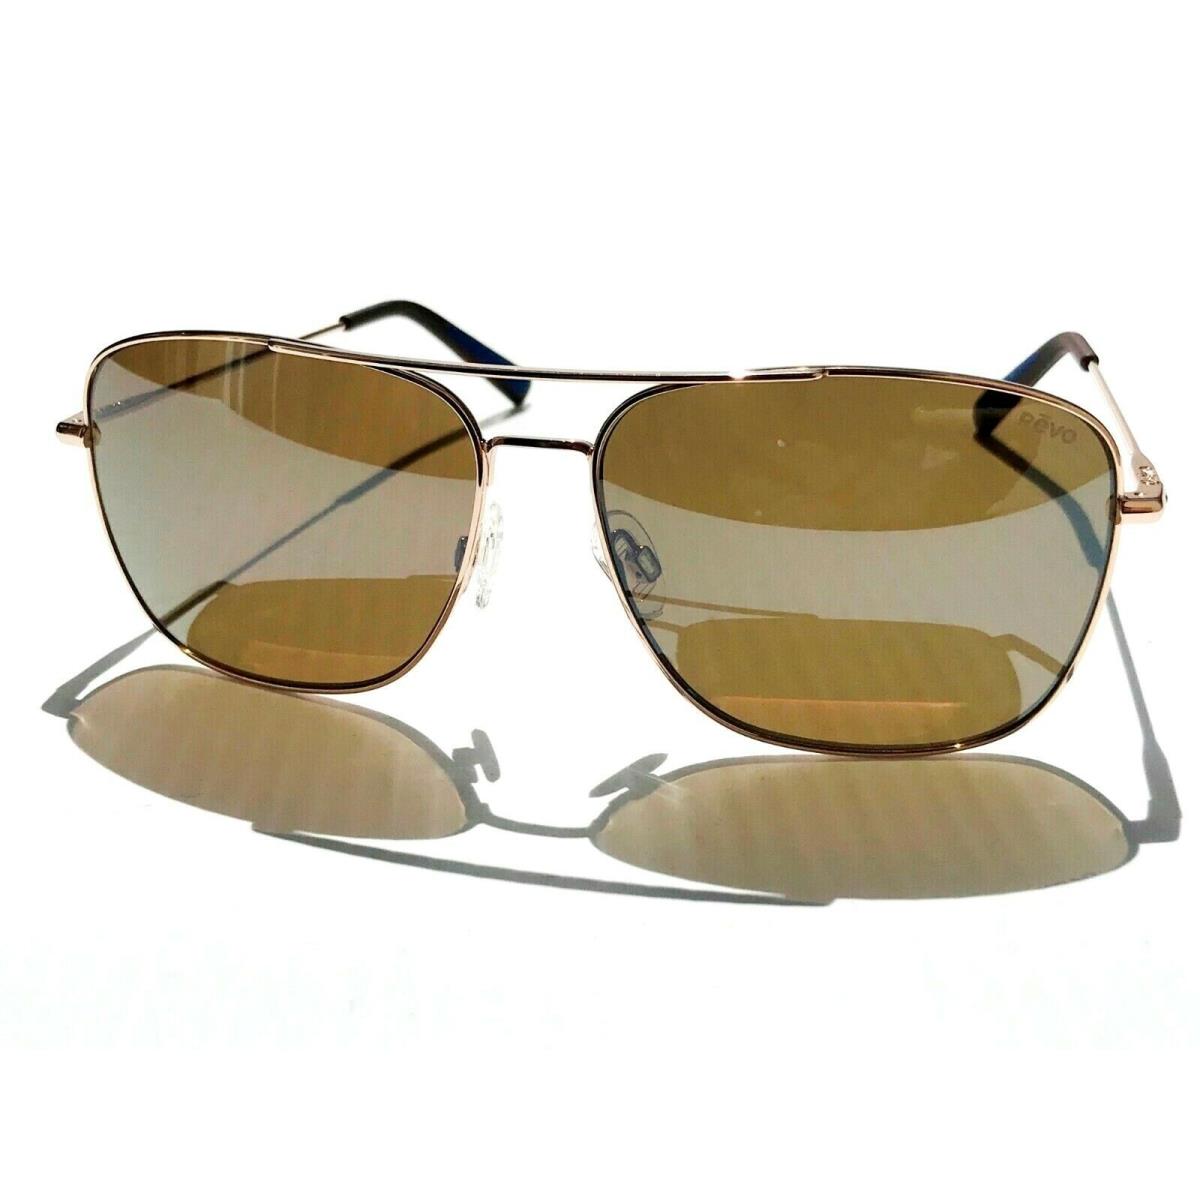 Revo sunglasses Harbor - Gold Frame, Brown Lens